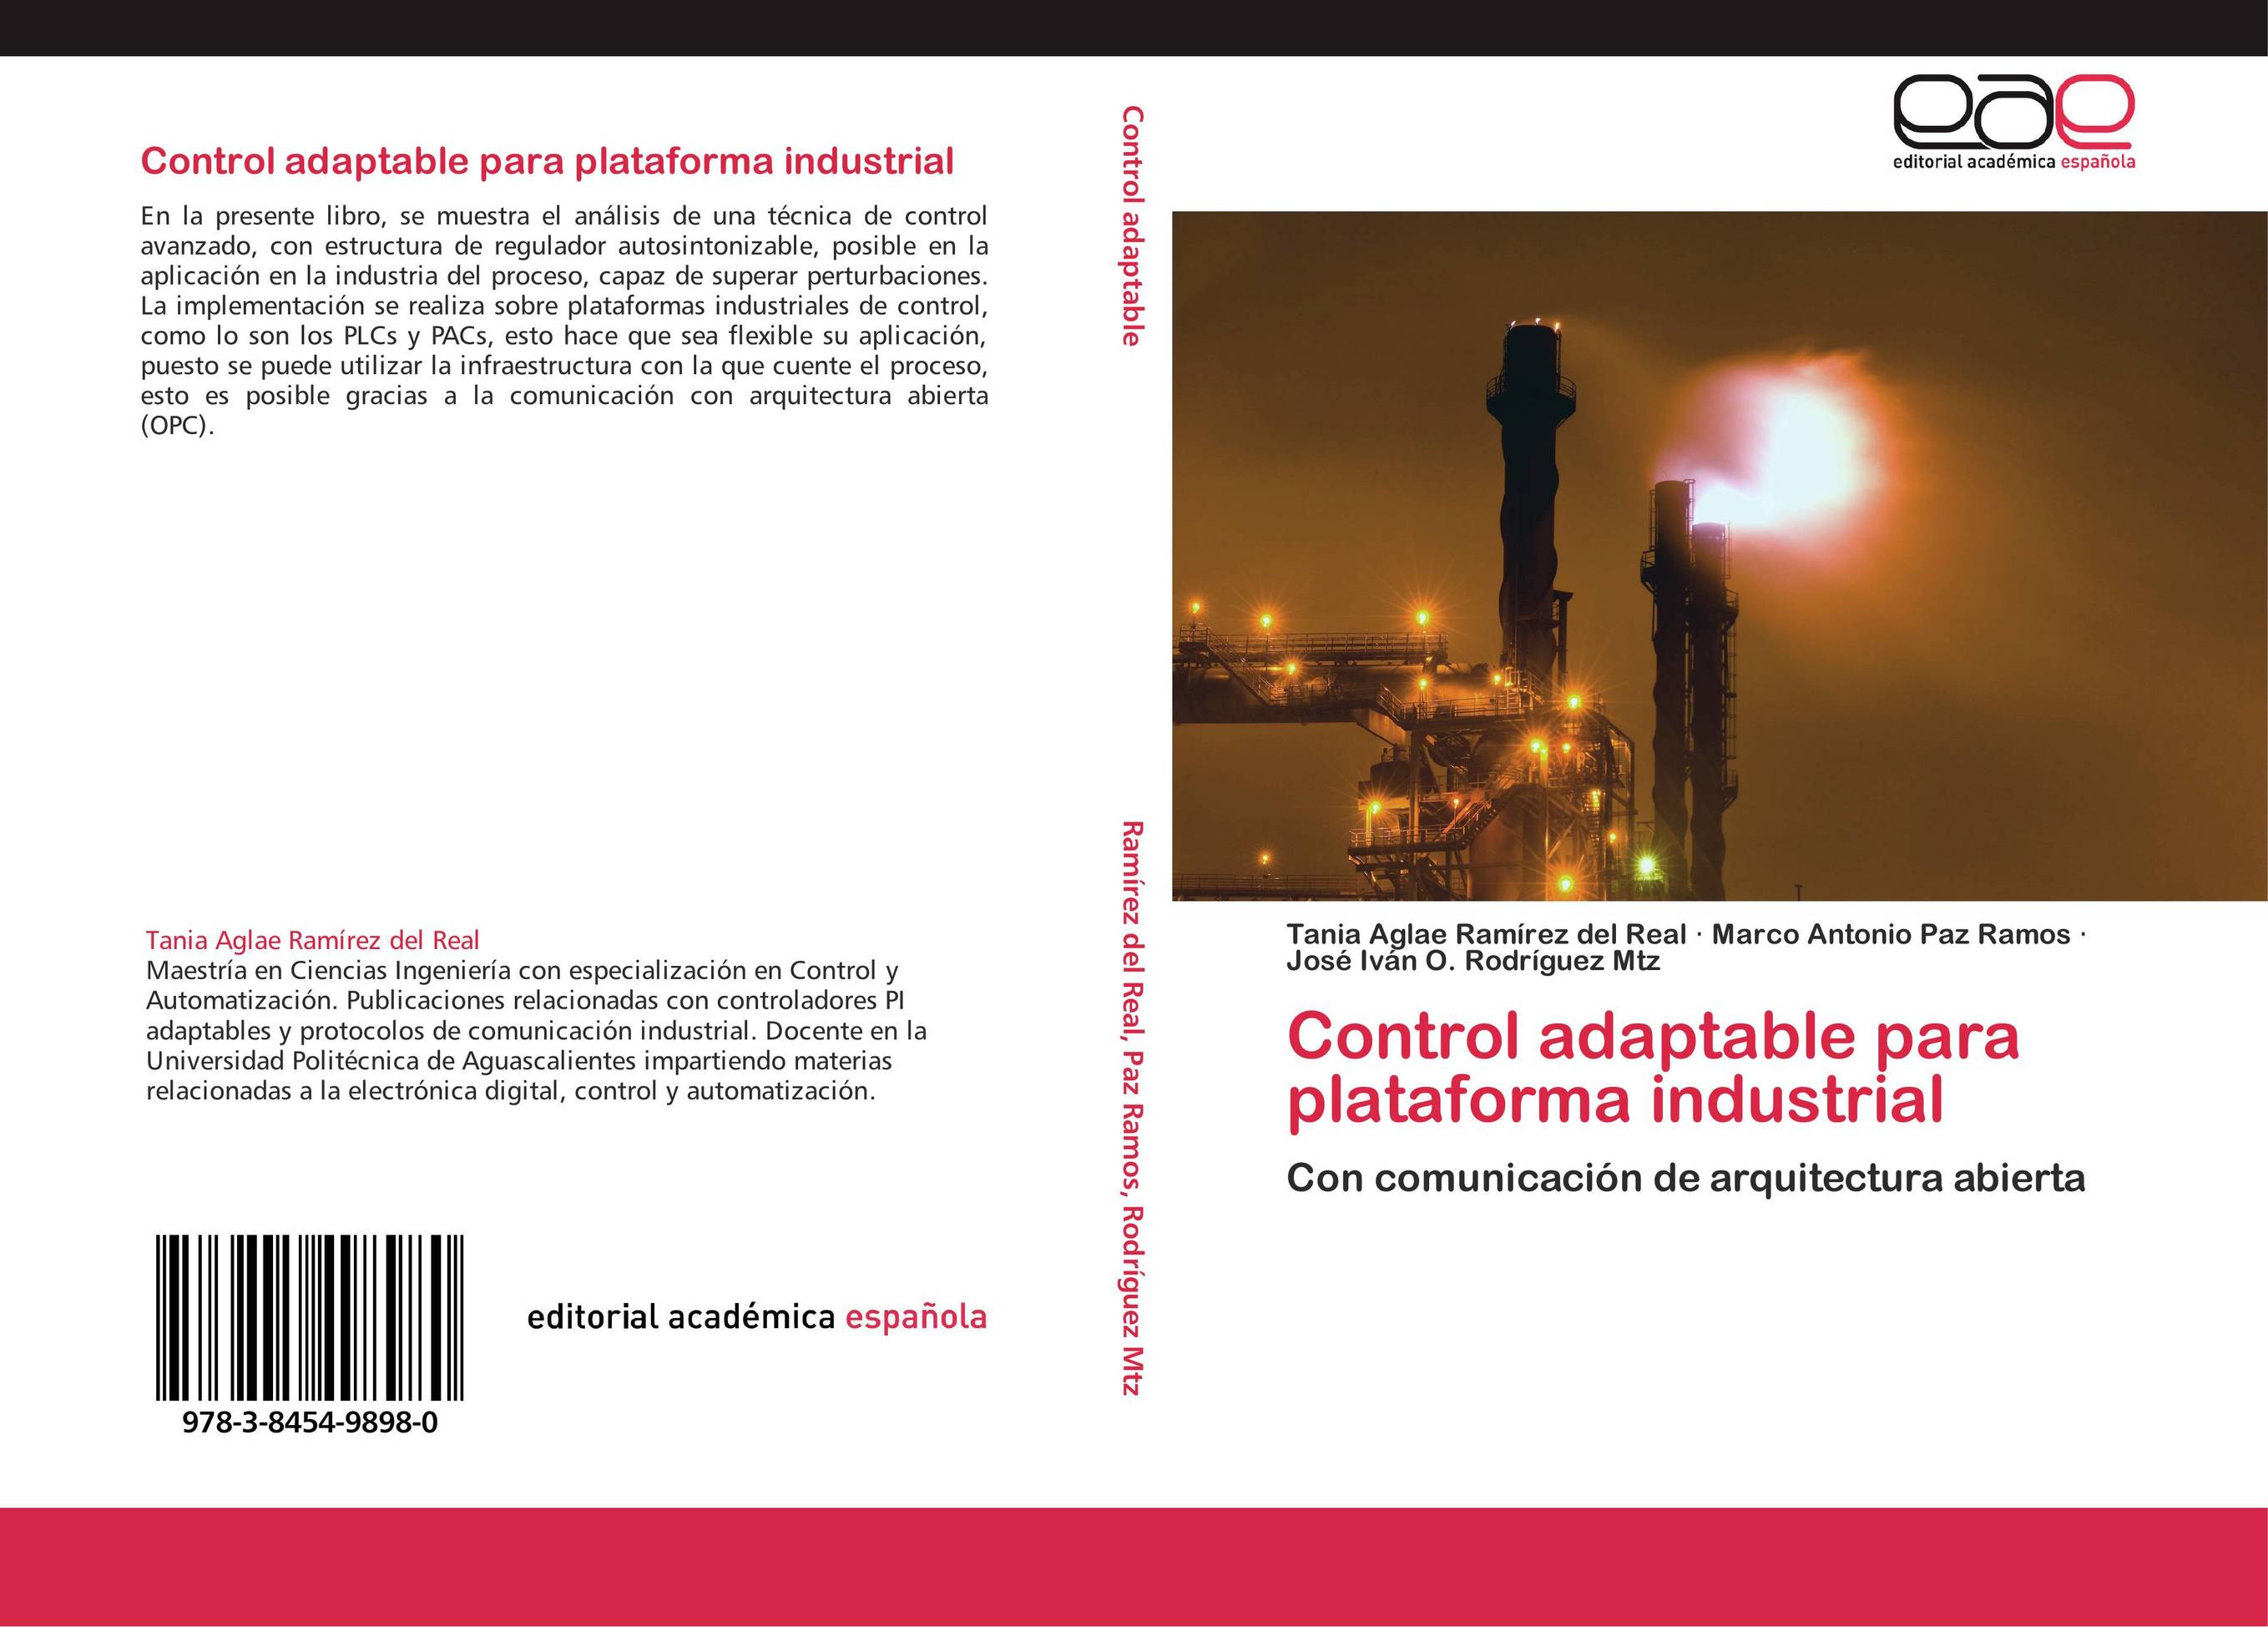 Control adaptable para plataforma industrial